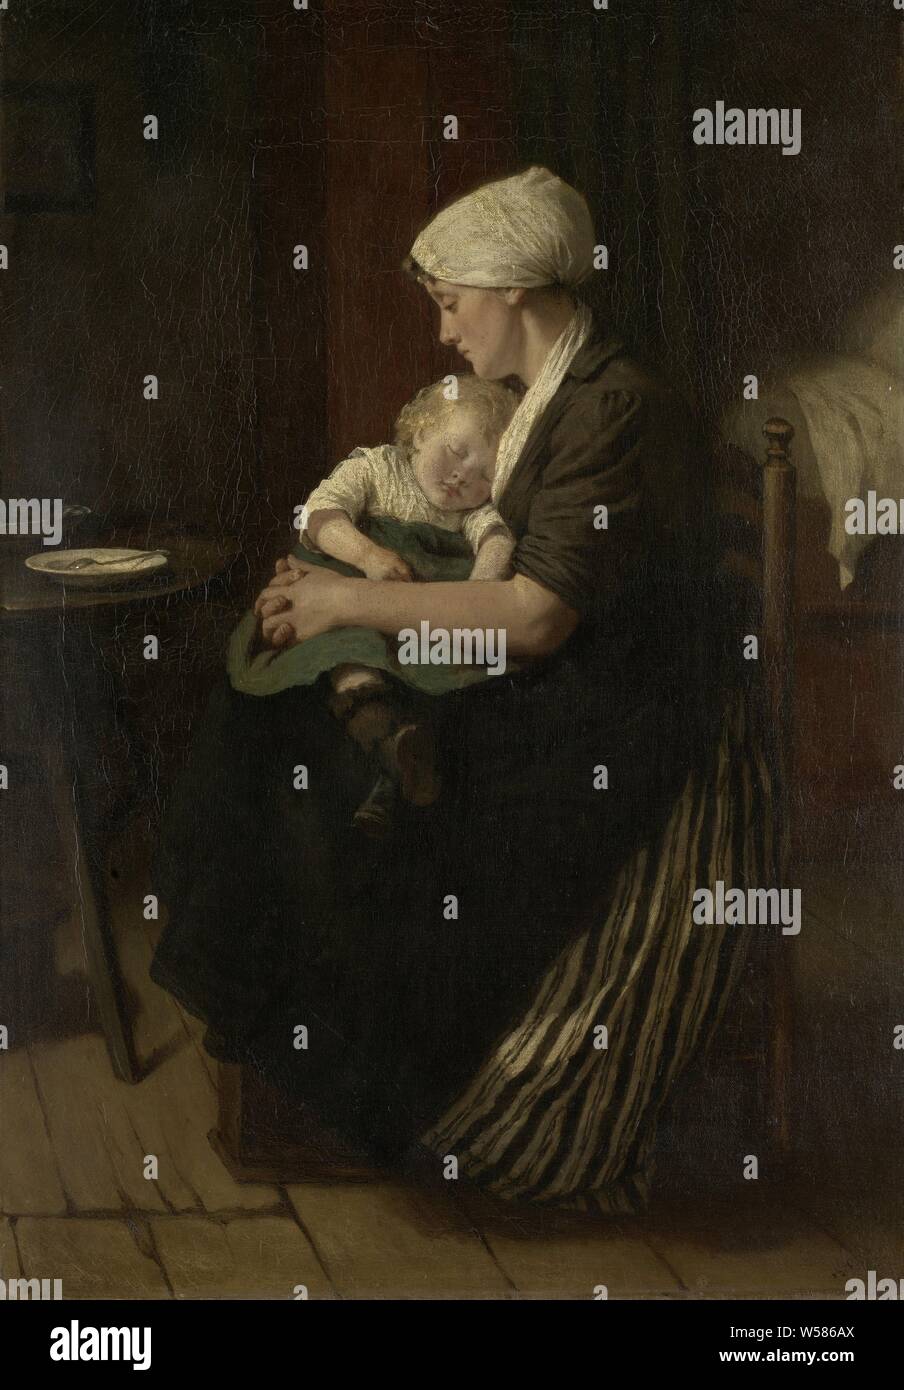 Eingelullt zu schlafen", eingelullt zu schlafen." saß Mutter mit einem schlafenden Kind auf Ihrem Schoß., David Burdeny, 1871, Leinwand, Ölfarbe (Lack), h 56 cm x W 39 cm Stockfoto